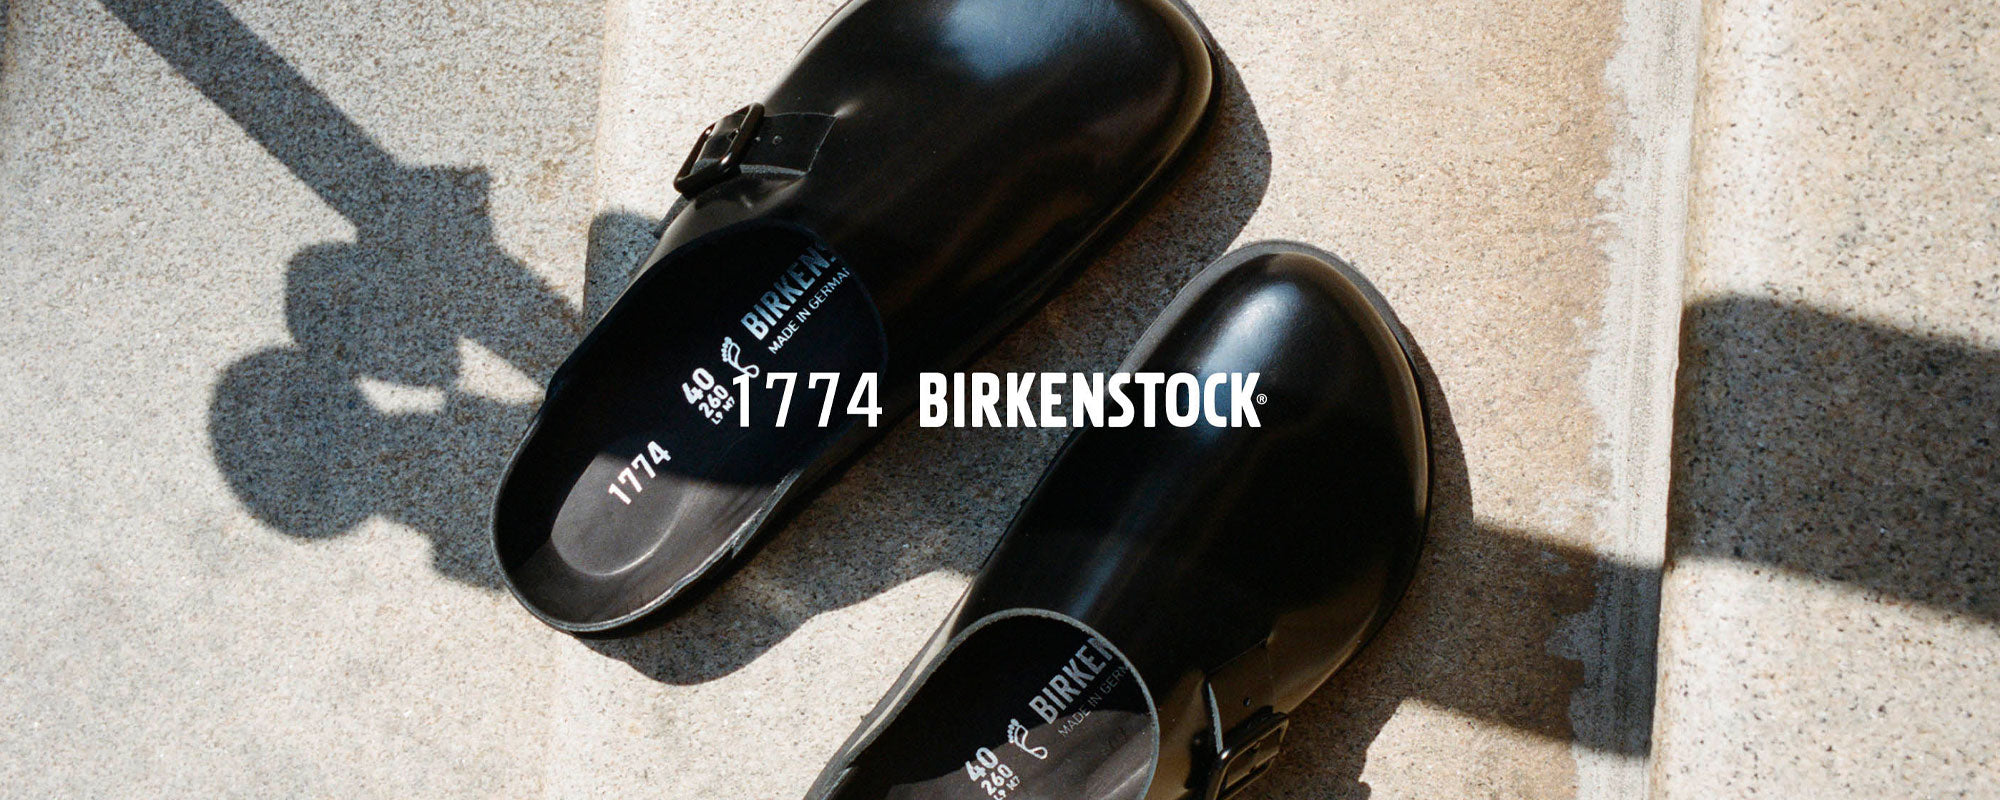 Birkenstock 1774 Men